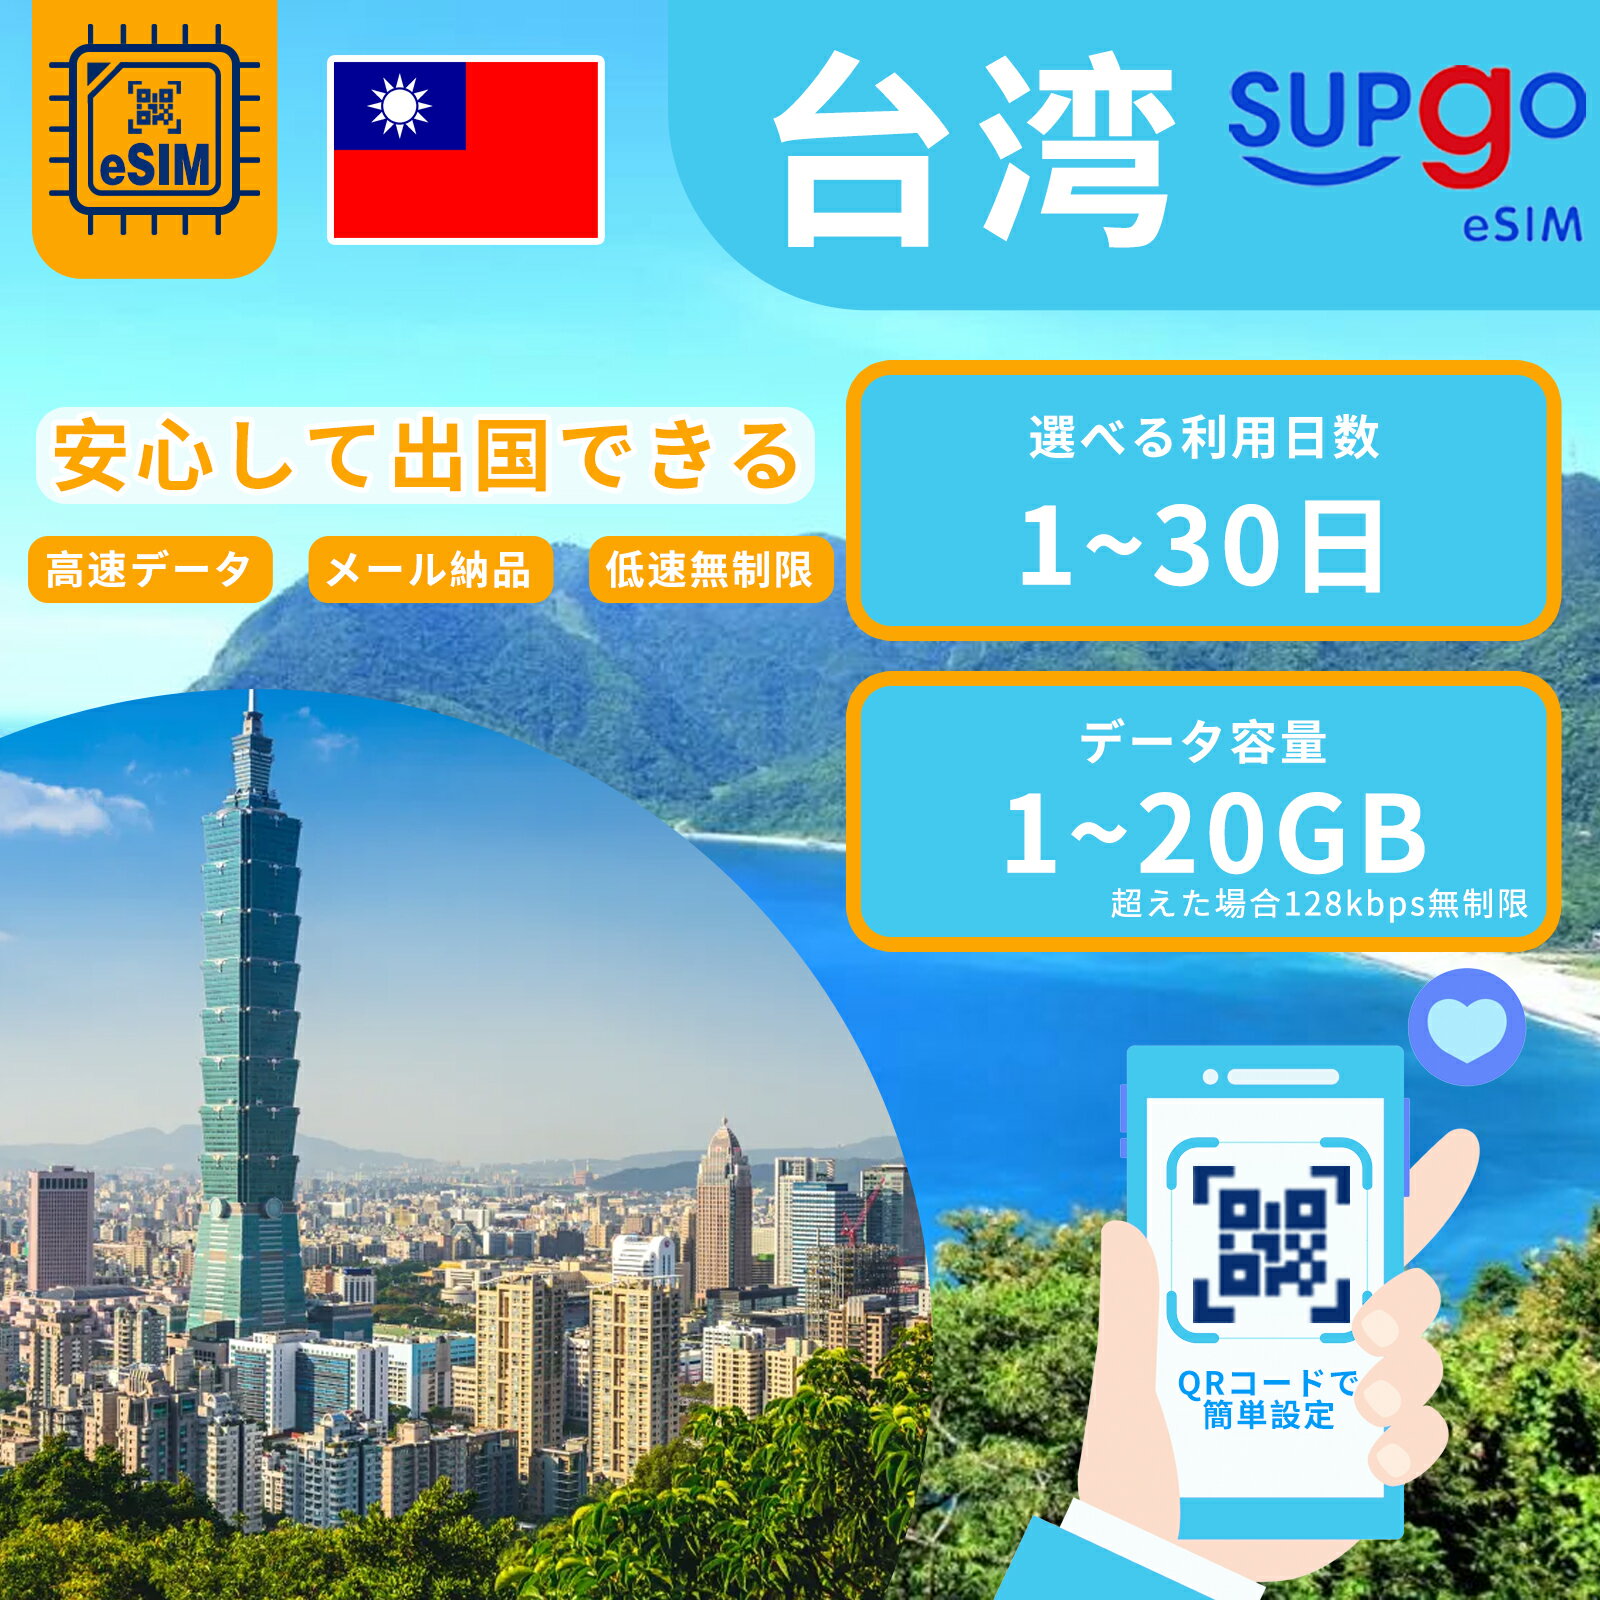 【GW5%OFF！】 eSIM 台湾 台北 esimカード 1~20GB 超高速 データ Wi-Fiよりも圧倒的に速い 3日間 5日間 7日間 10日間 15日間 20日間 30..